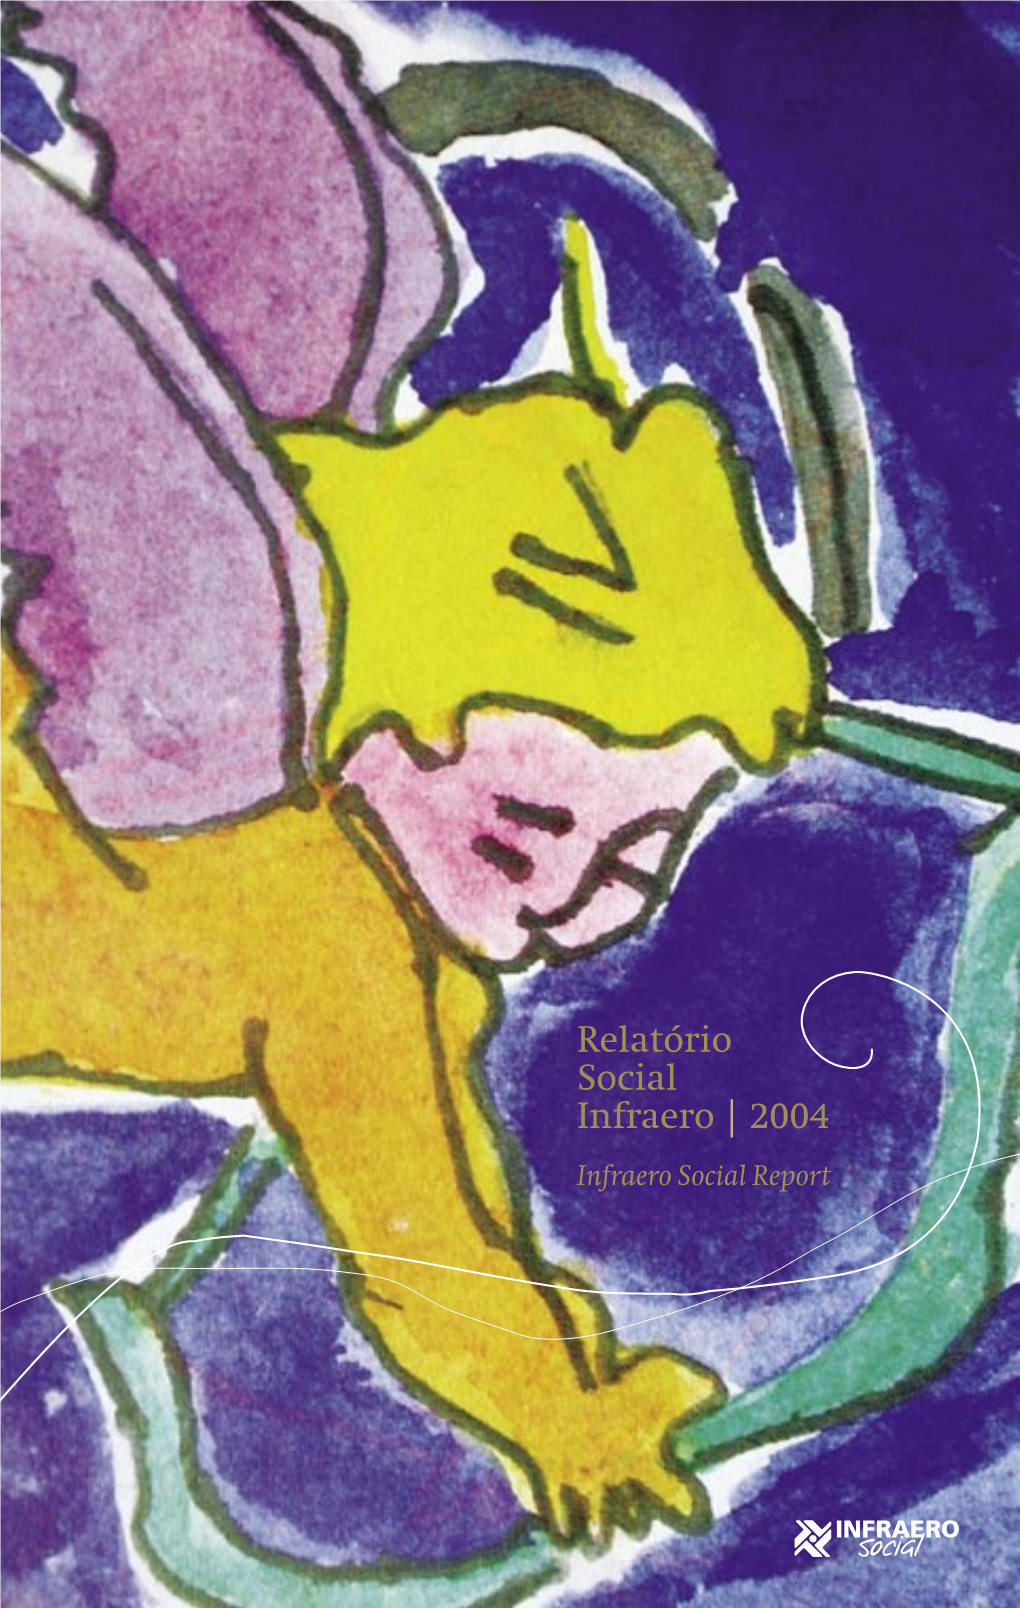 Relatório Social Infraero | 2004 Infraero Social Report